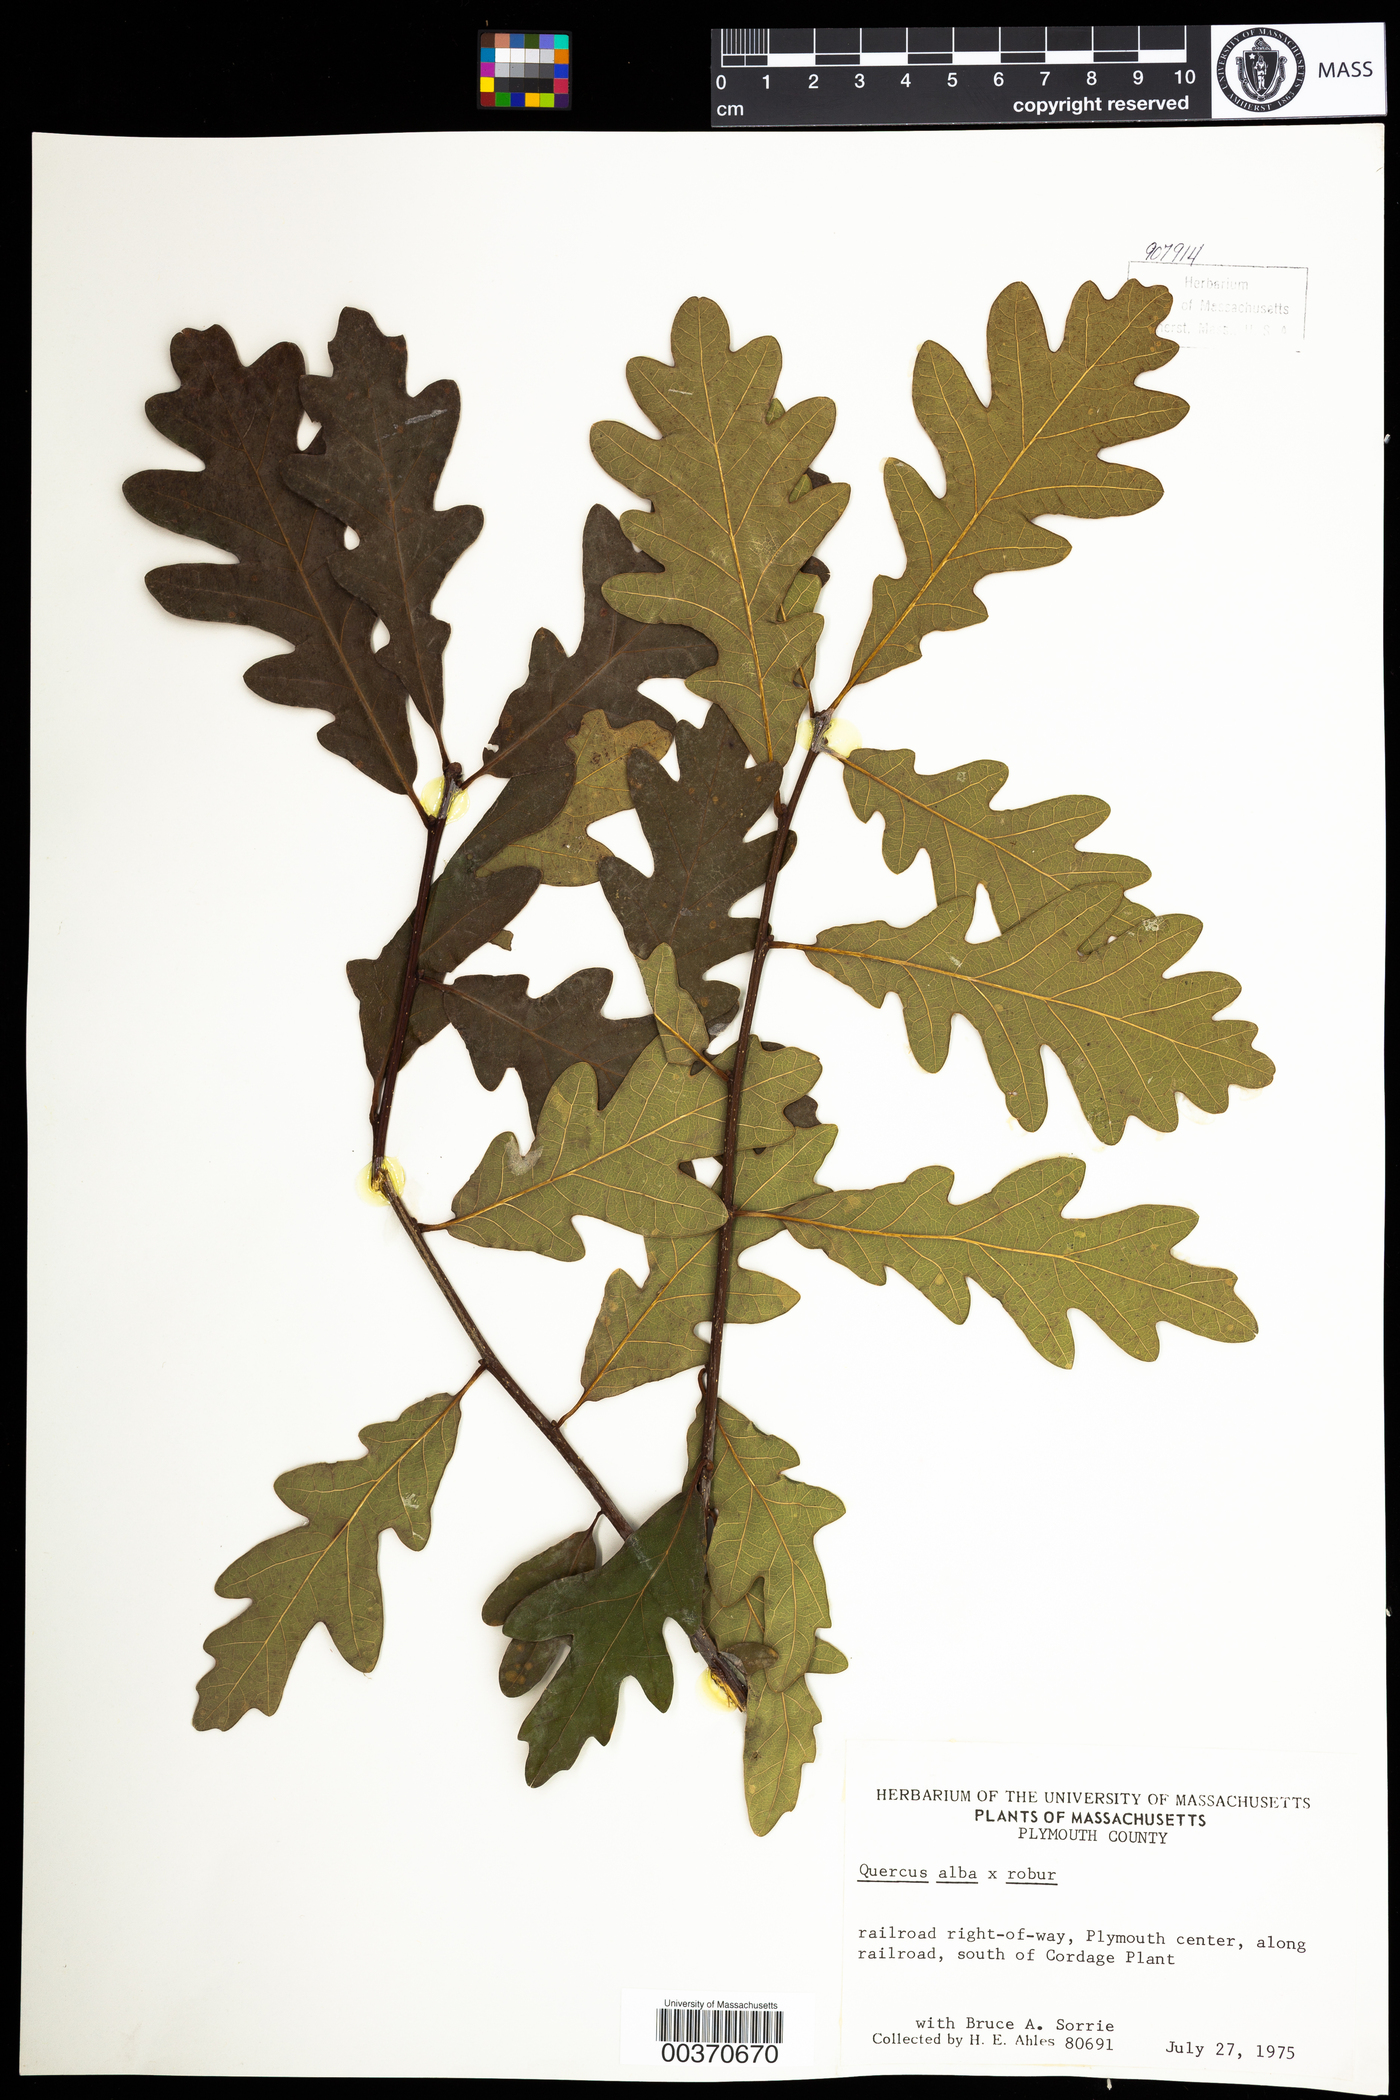 Quercus bimundorum image